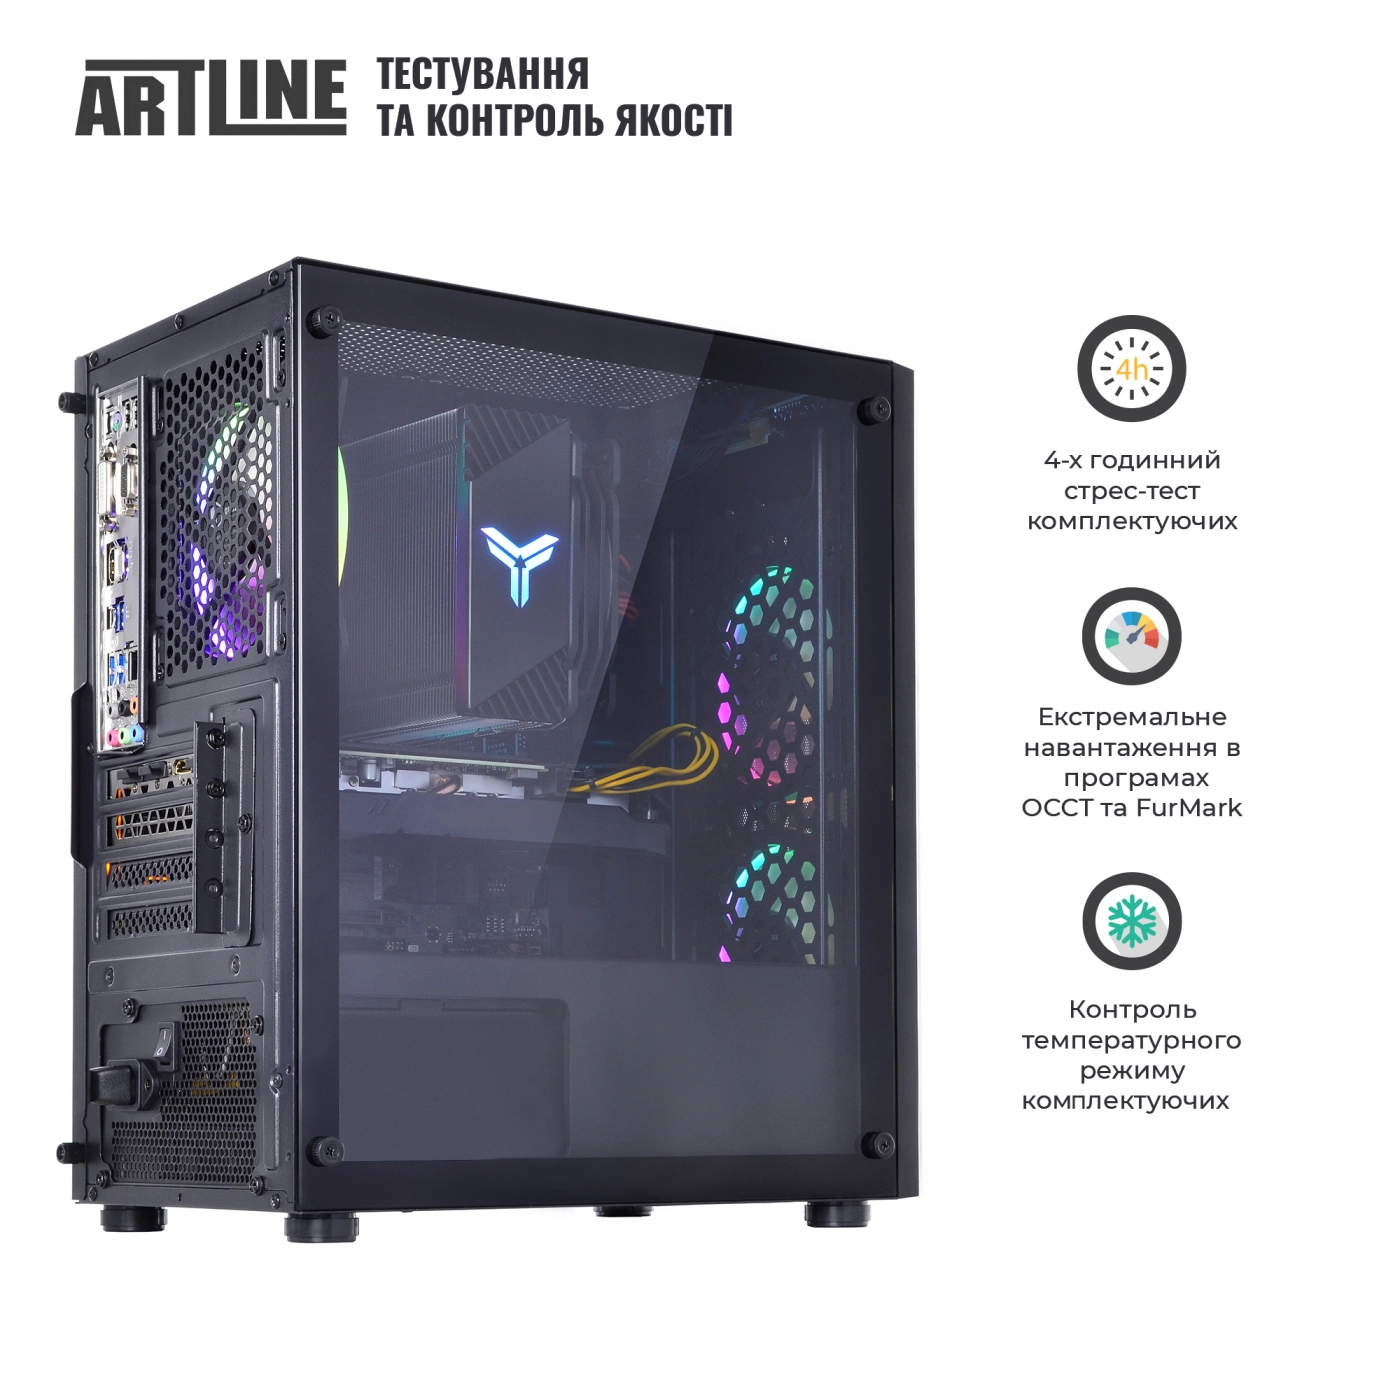 Купить Компьютер ARTLINE Gaming X71v32 - фото 9